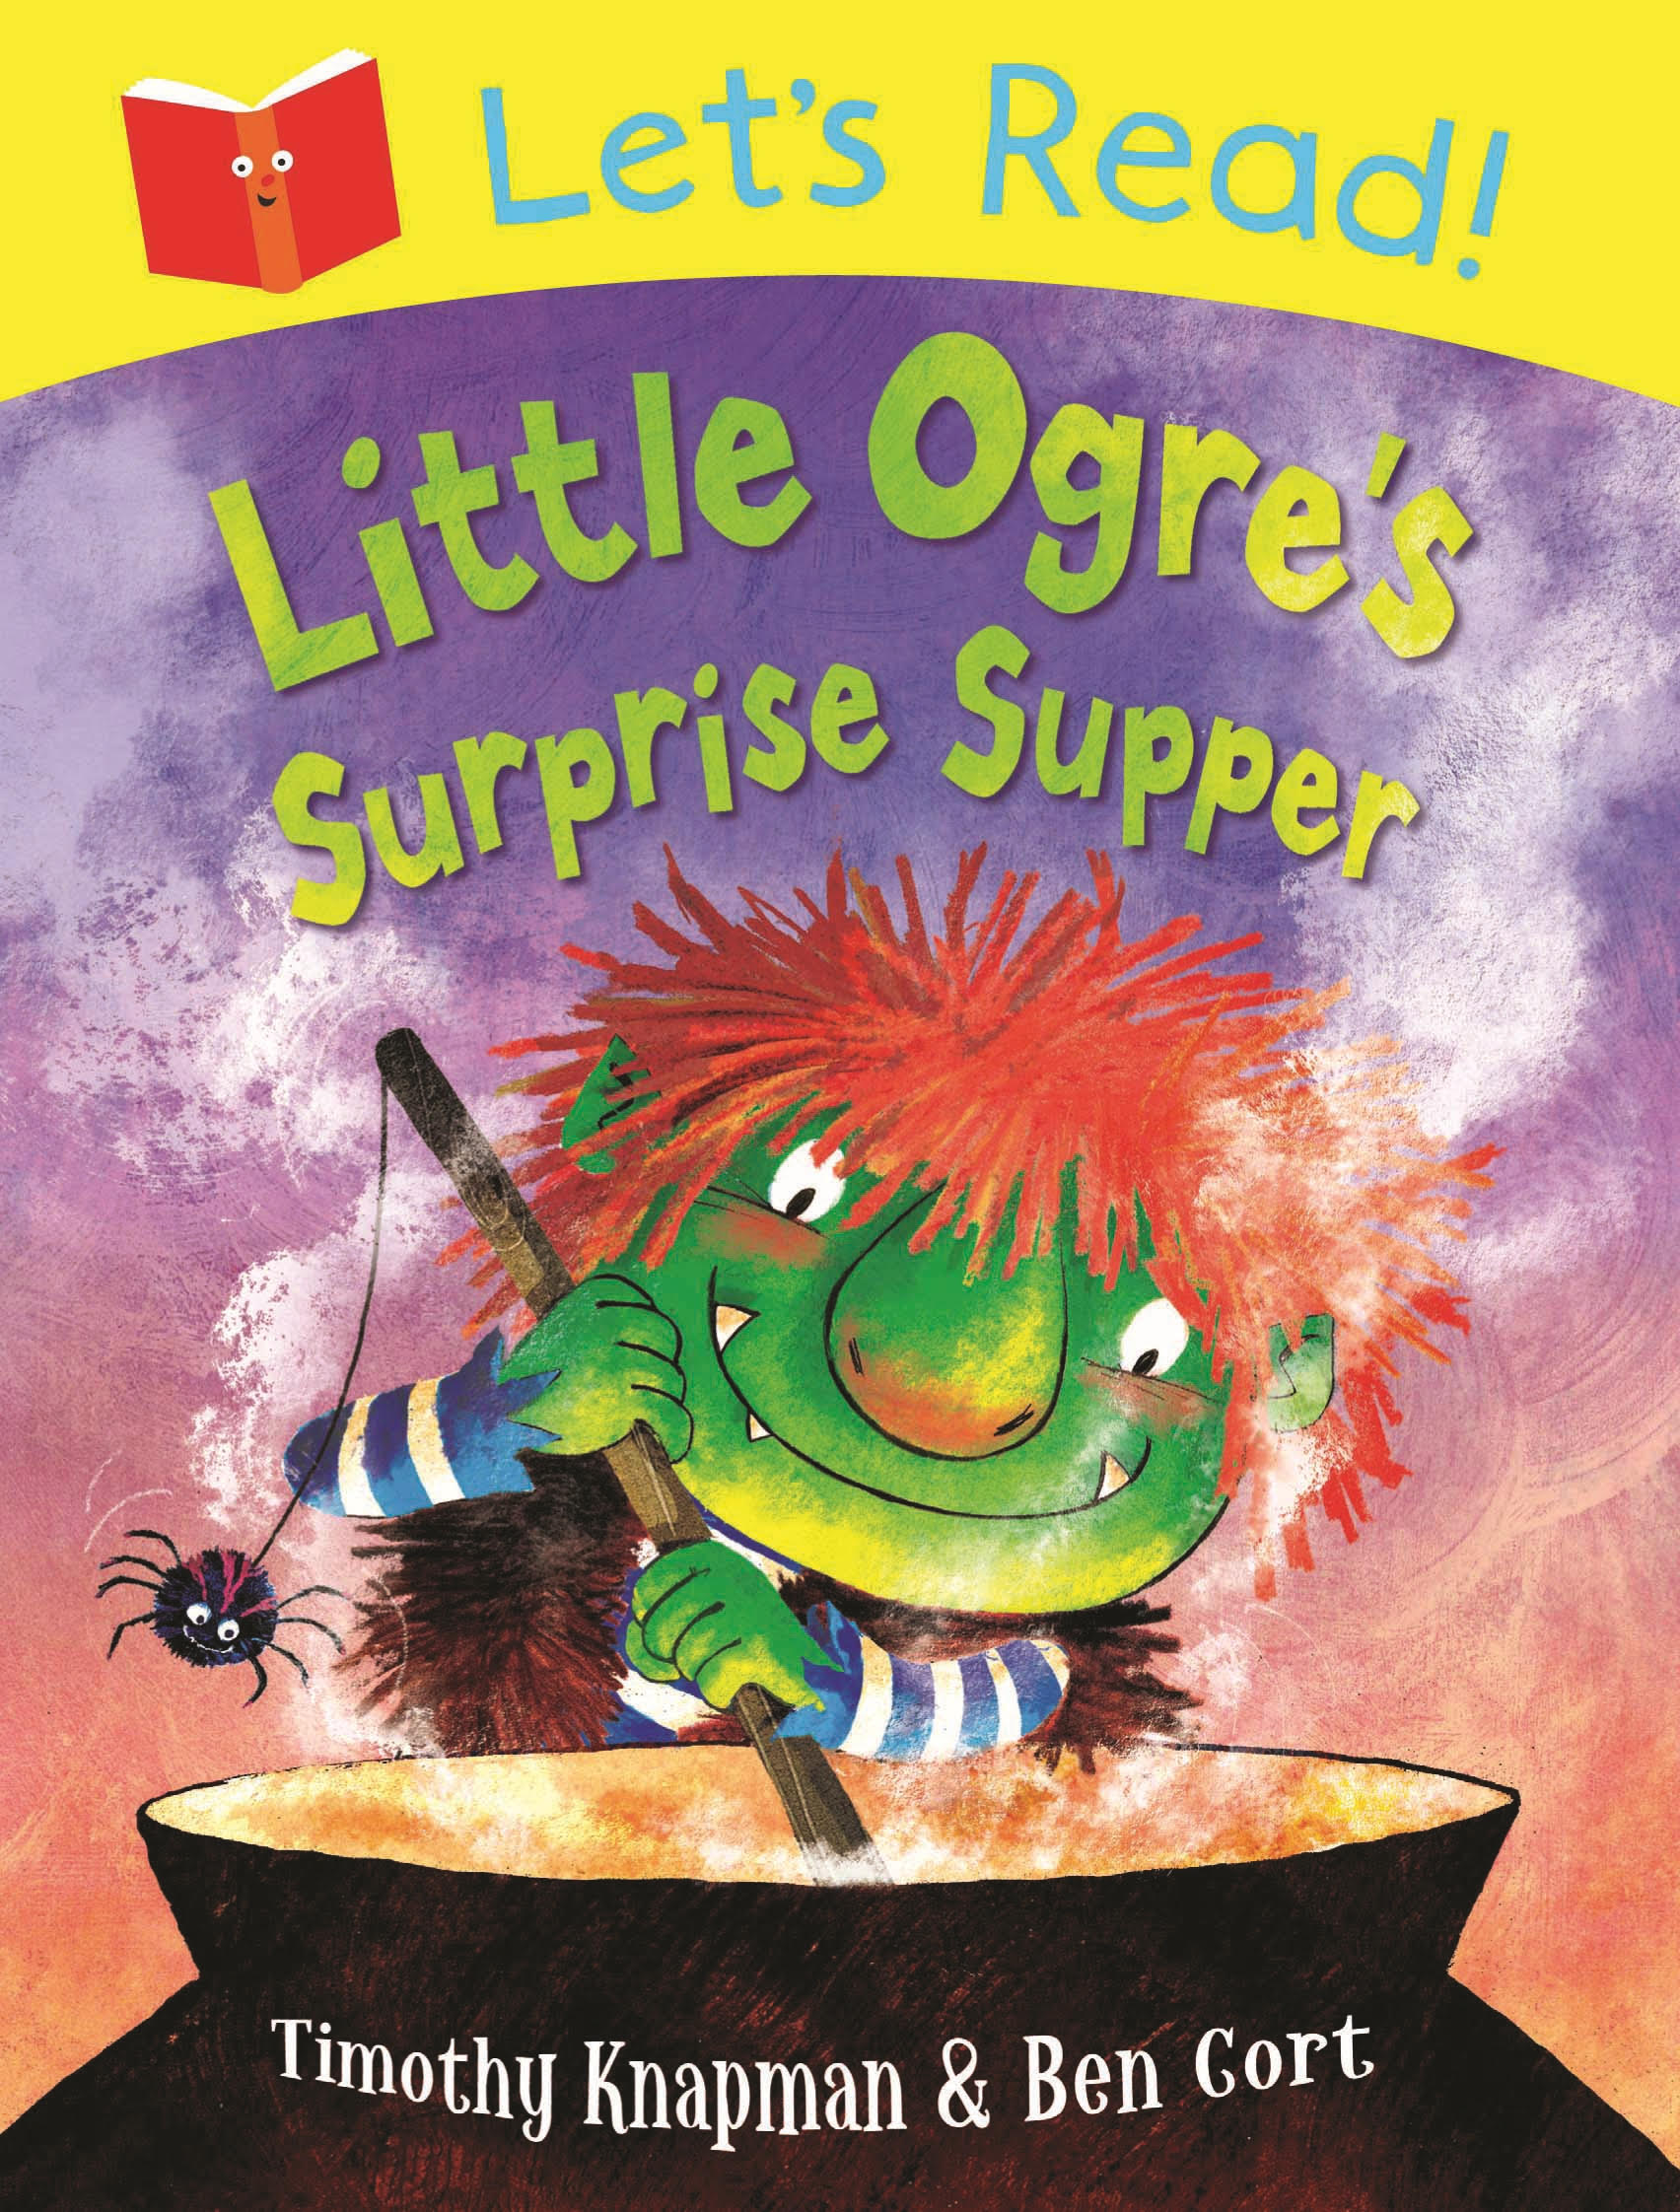 Let’s Read! Little Ogre’s Surprise Supper cover